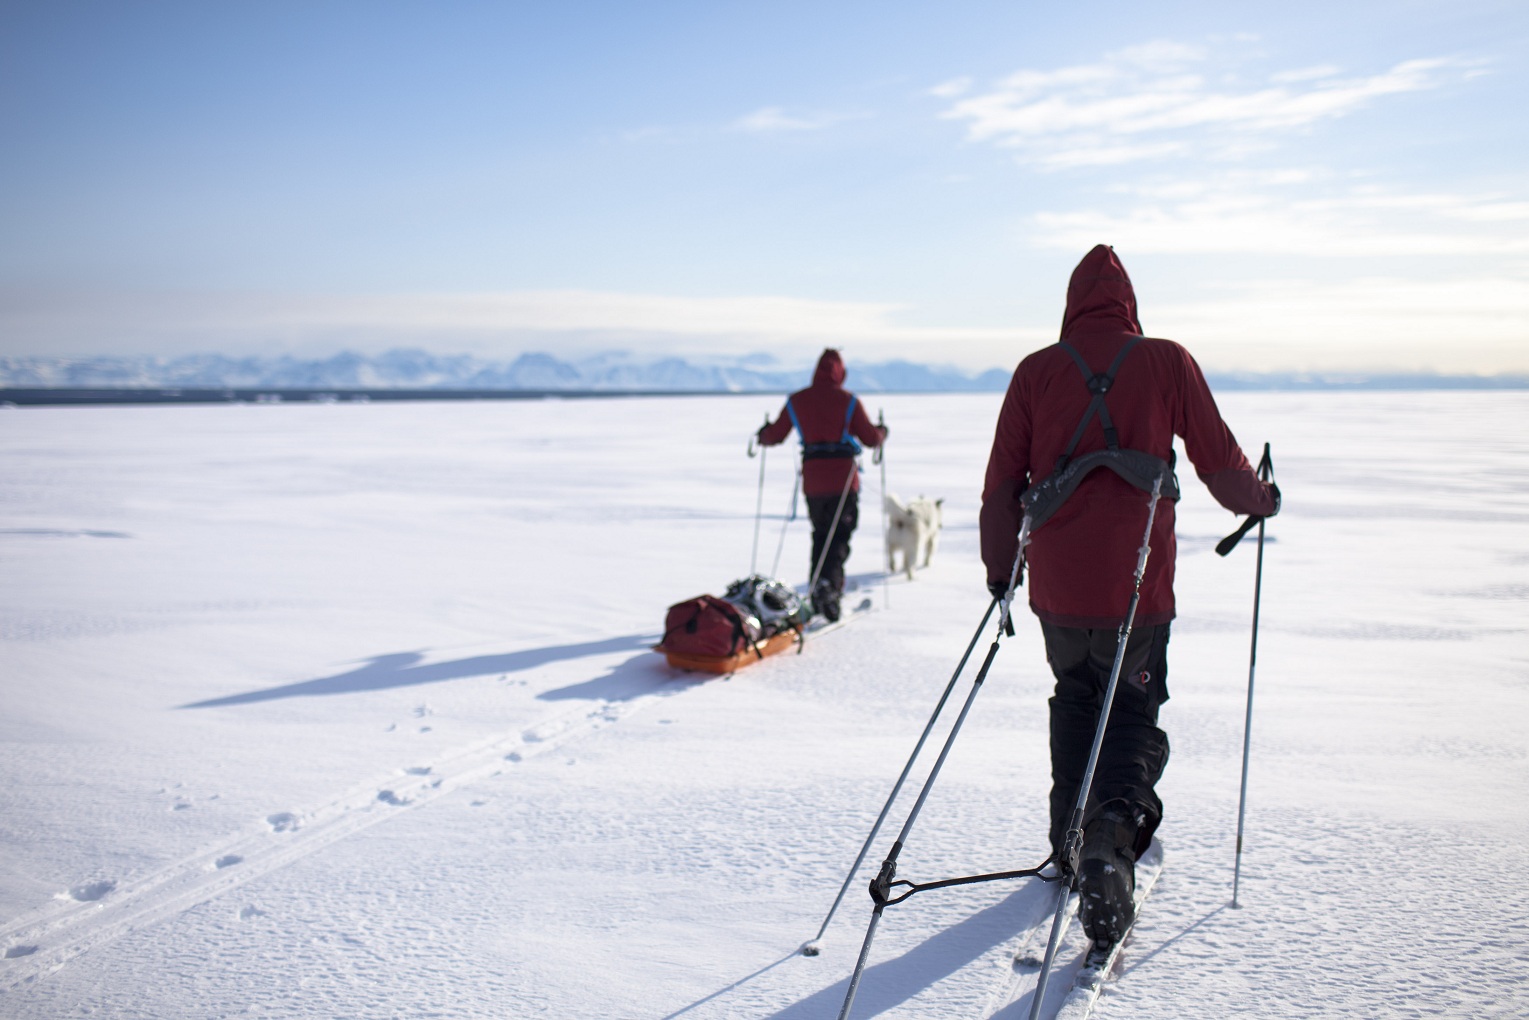 L'expédition Pôle Nord 2012 en entraînement au Groenland, sur la banquise. © Raphaël Demaret